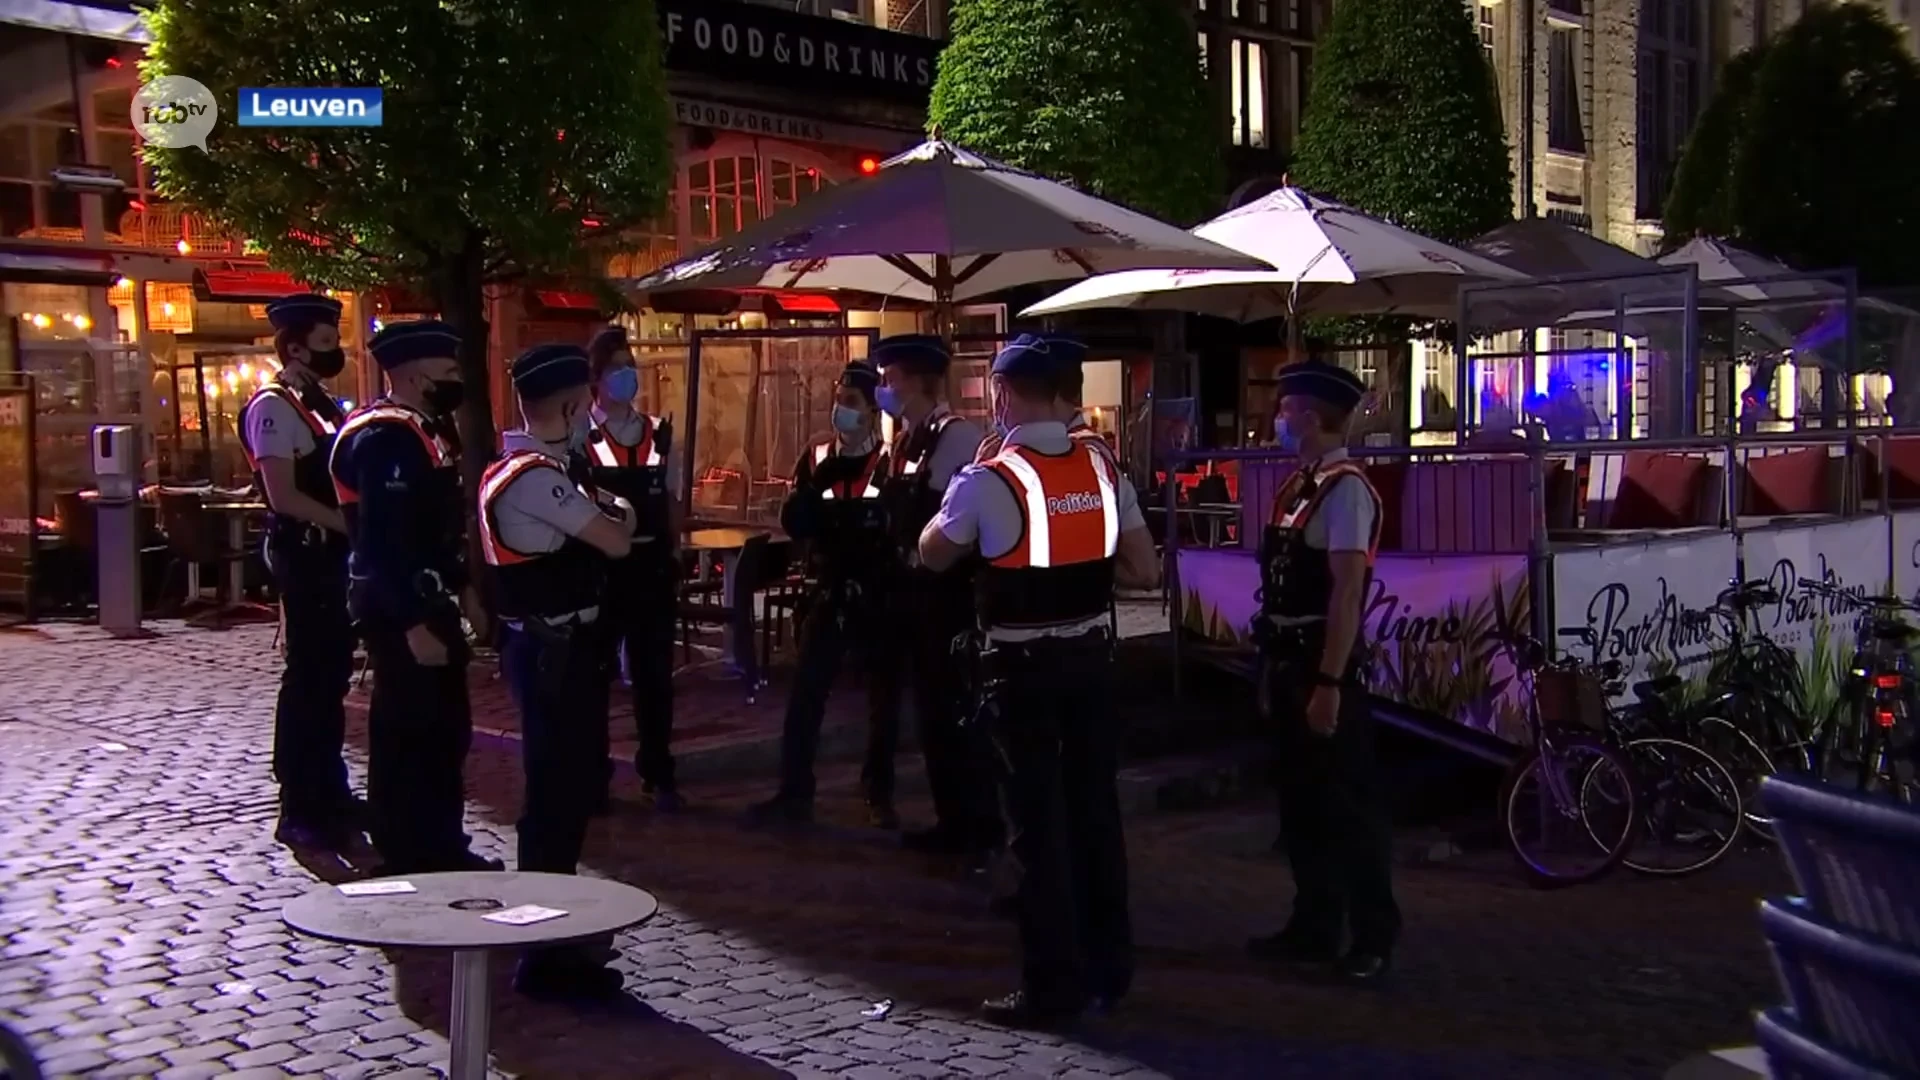 Cafébaas en barman van café op Oude Markt veroordeeld tot 150 uren werkstraf na aanval op klant